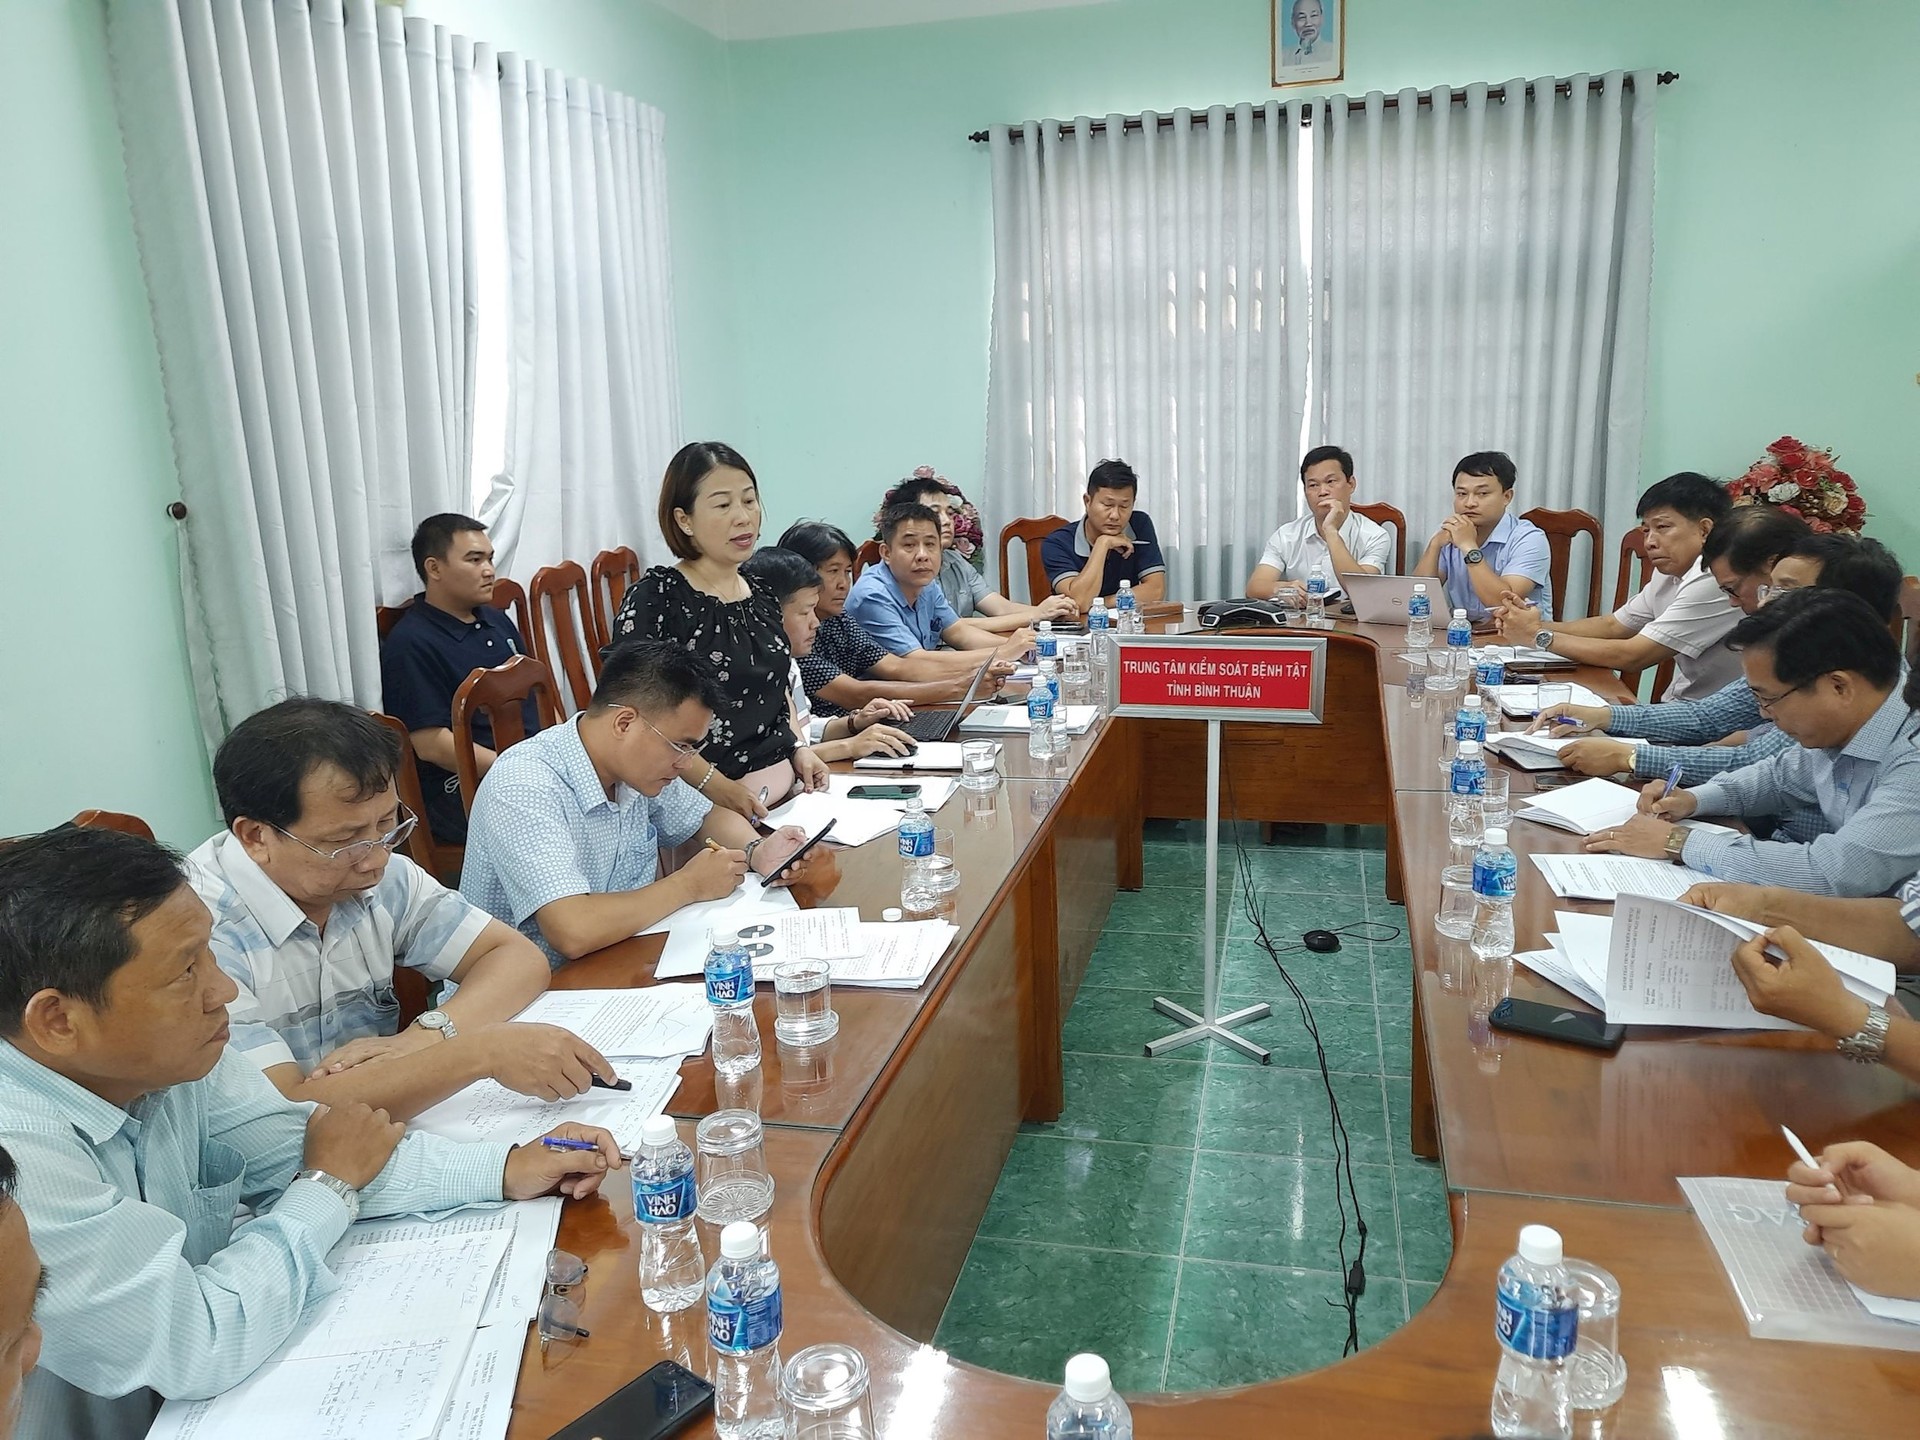 Sức khỏe - Số ca sốt xuất huyết tại tỉnh Bình Thuận cao nhất khu vực miền Trung